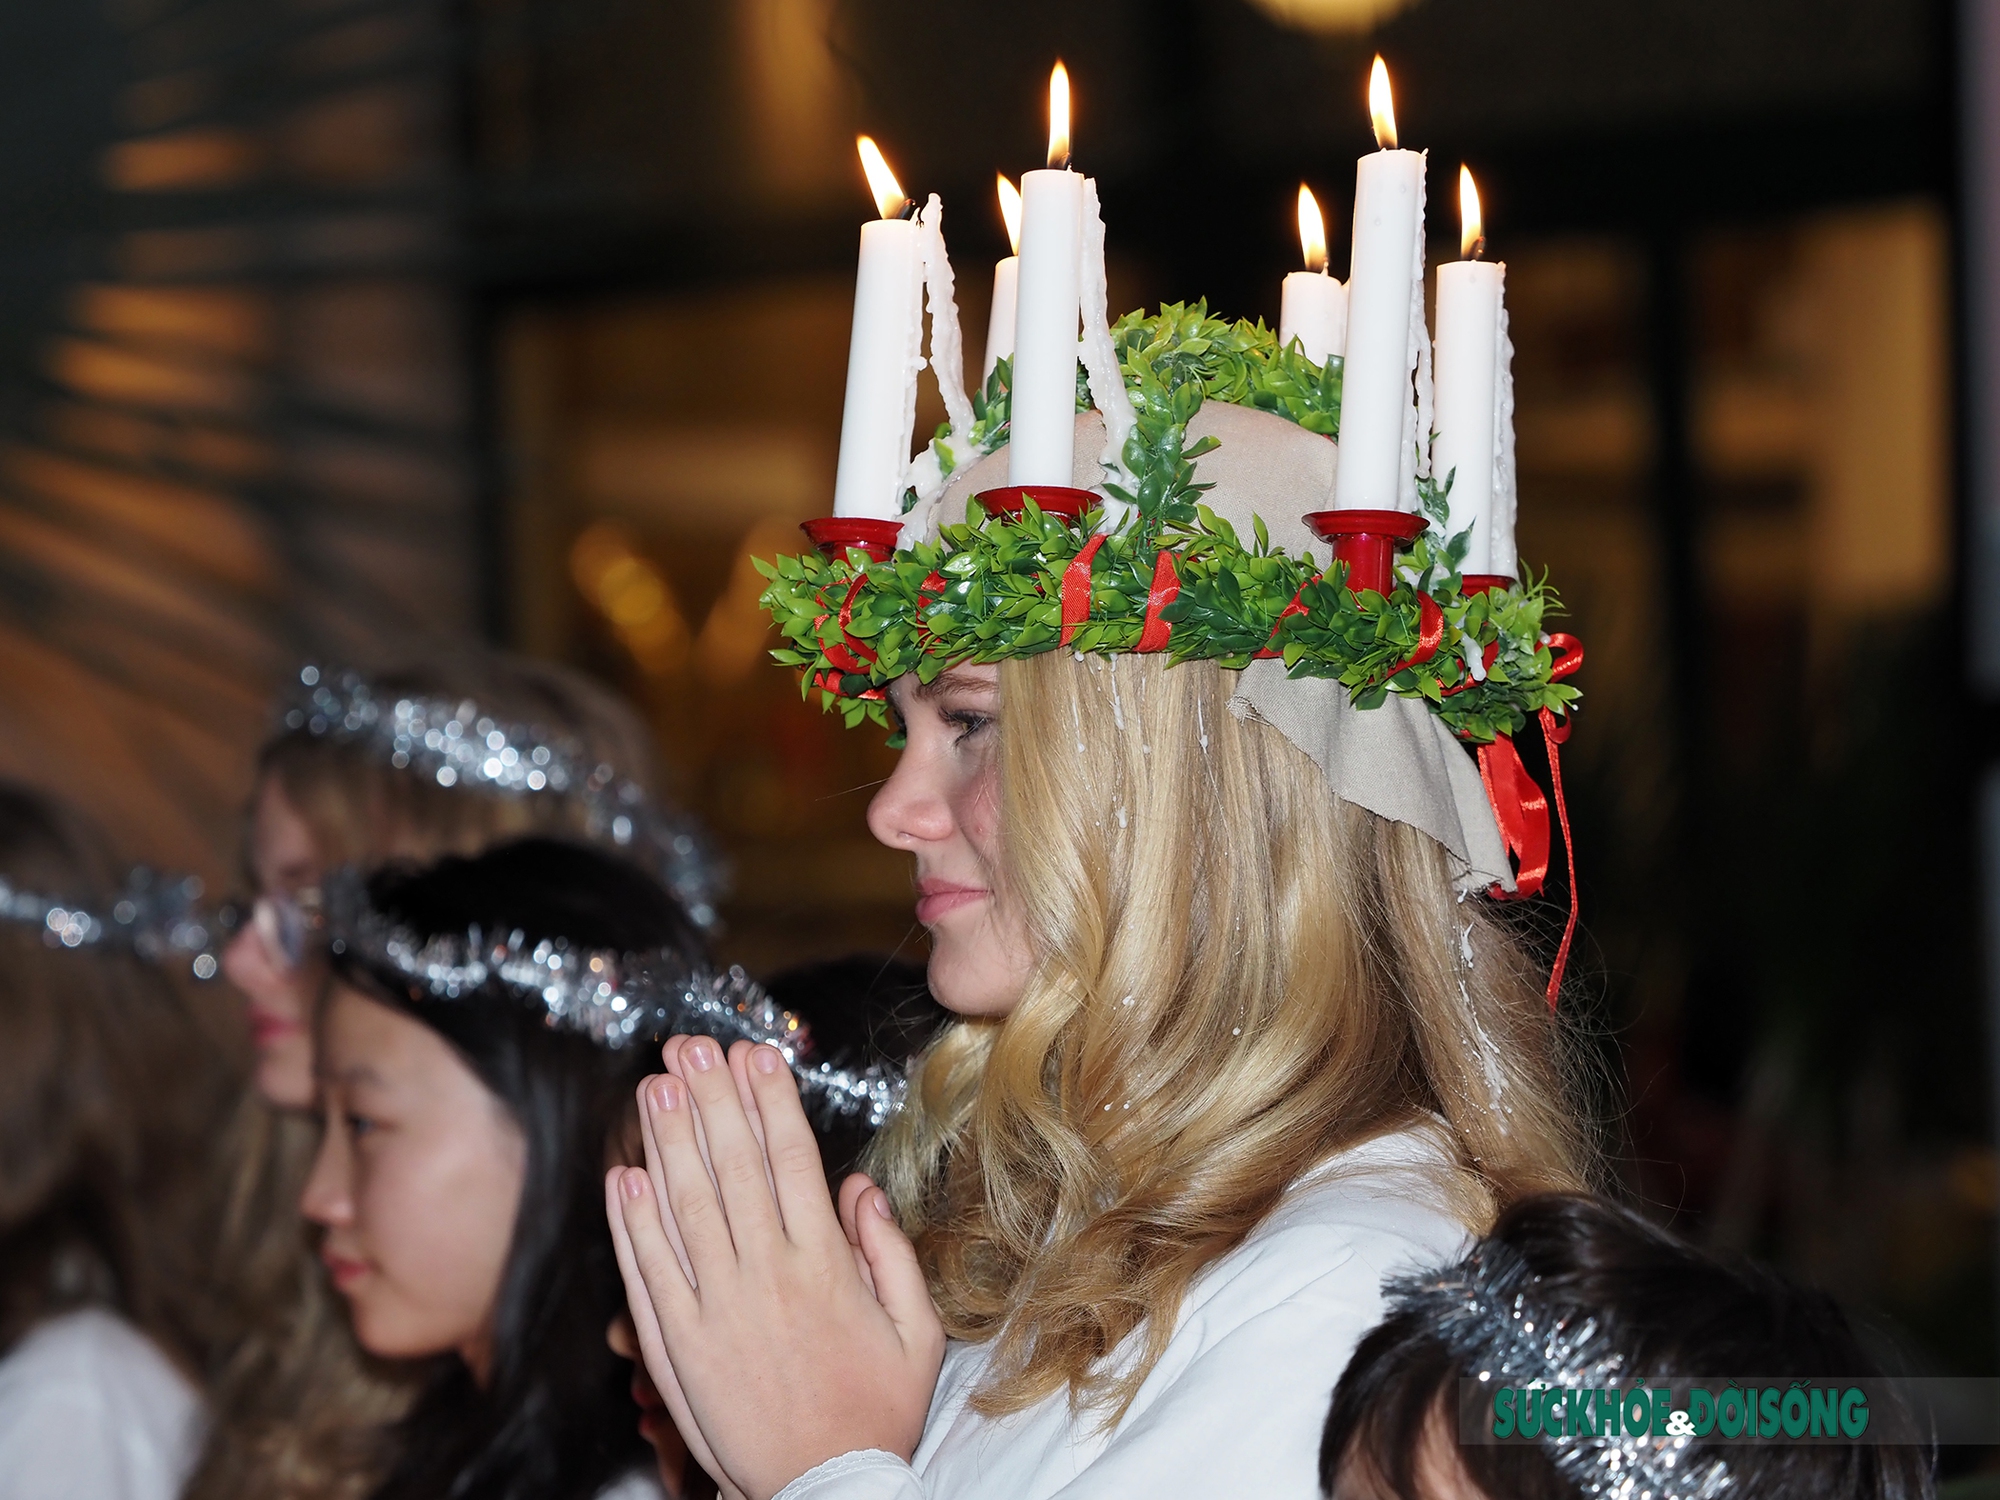 Đặc sắc lễ hội Lucia của Thụy Điển giữa lòng Thủ đô - Ảnh 6.